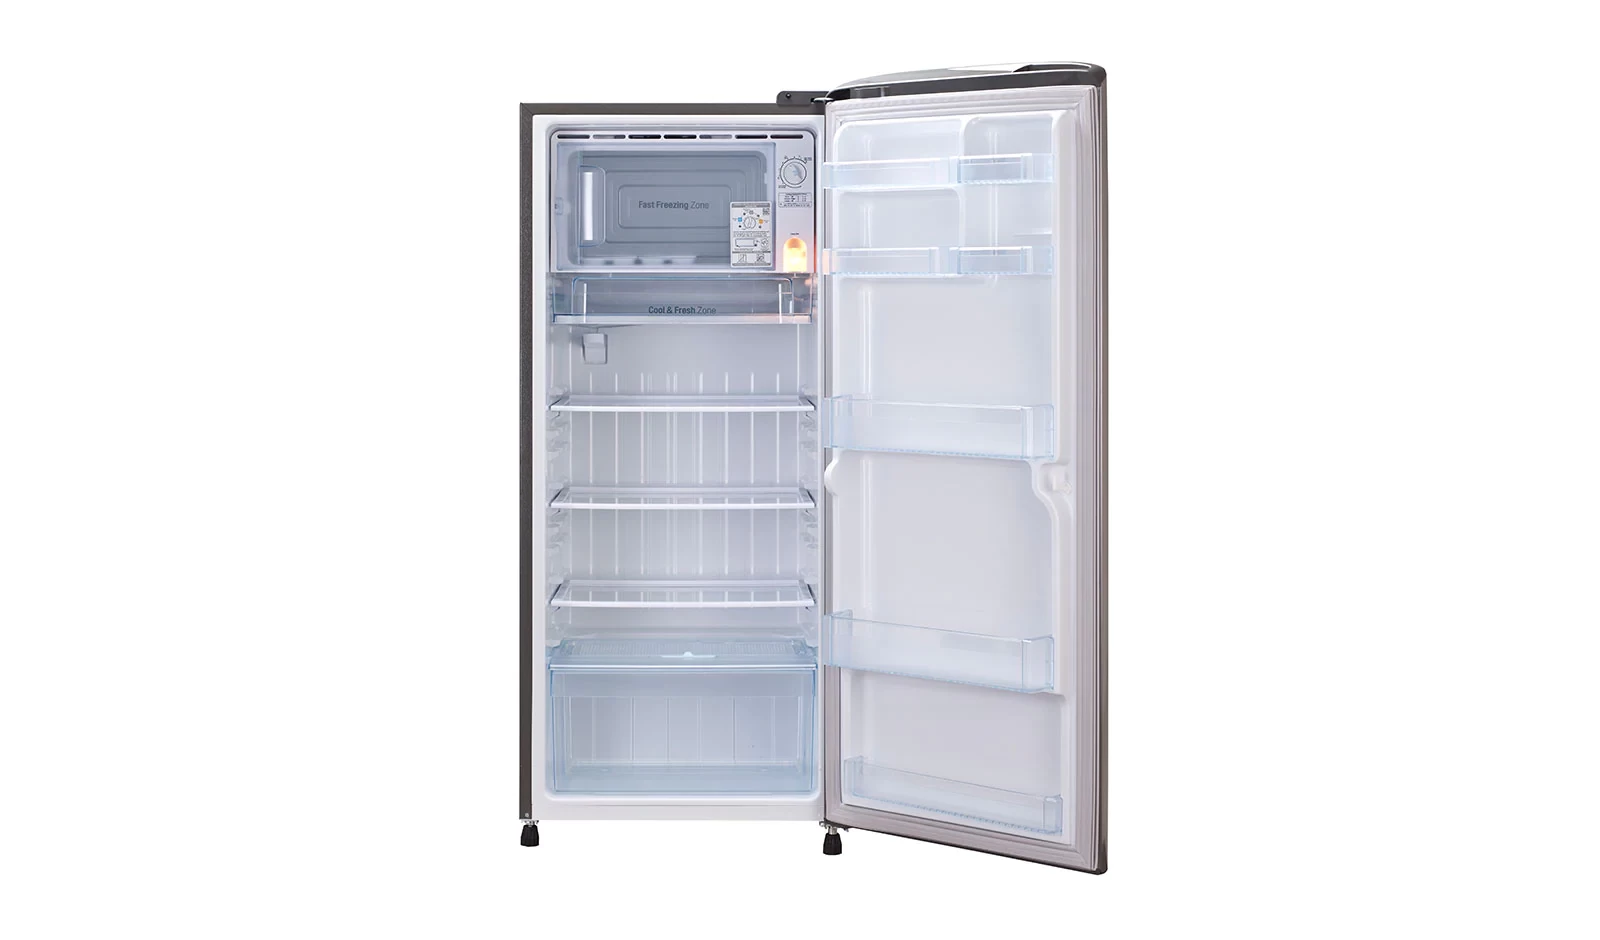 LG GL-B221ALLB 210L Single Door Refrigerator